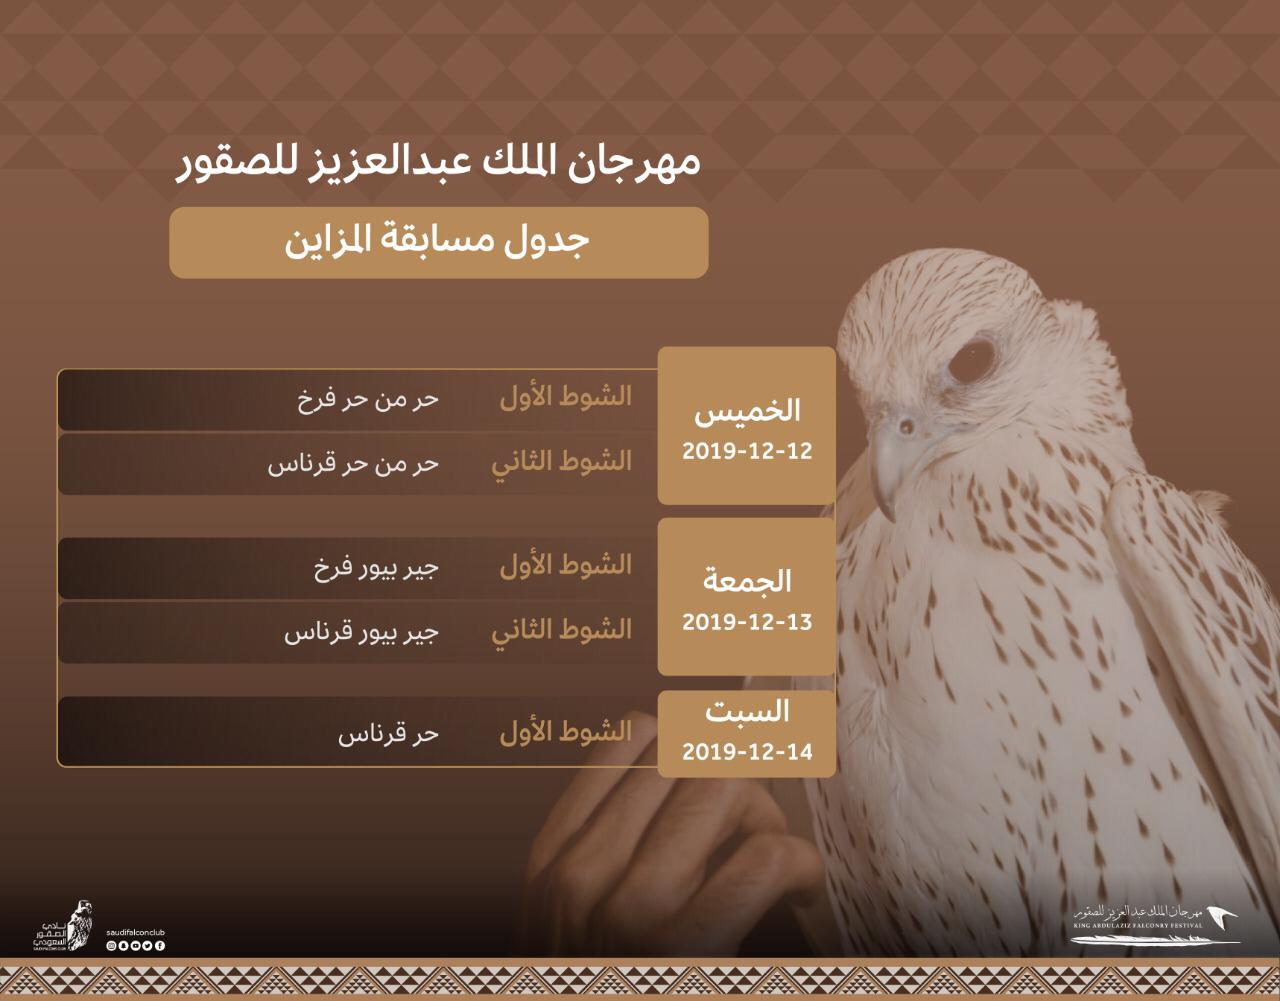 انطلاق مسابقة المزاين بمهرجان الملك عبدالعزيز للصقور.. الخميس المقبل